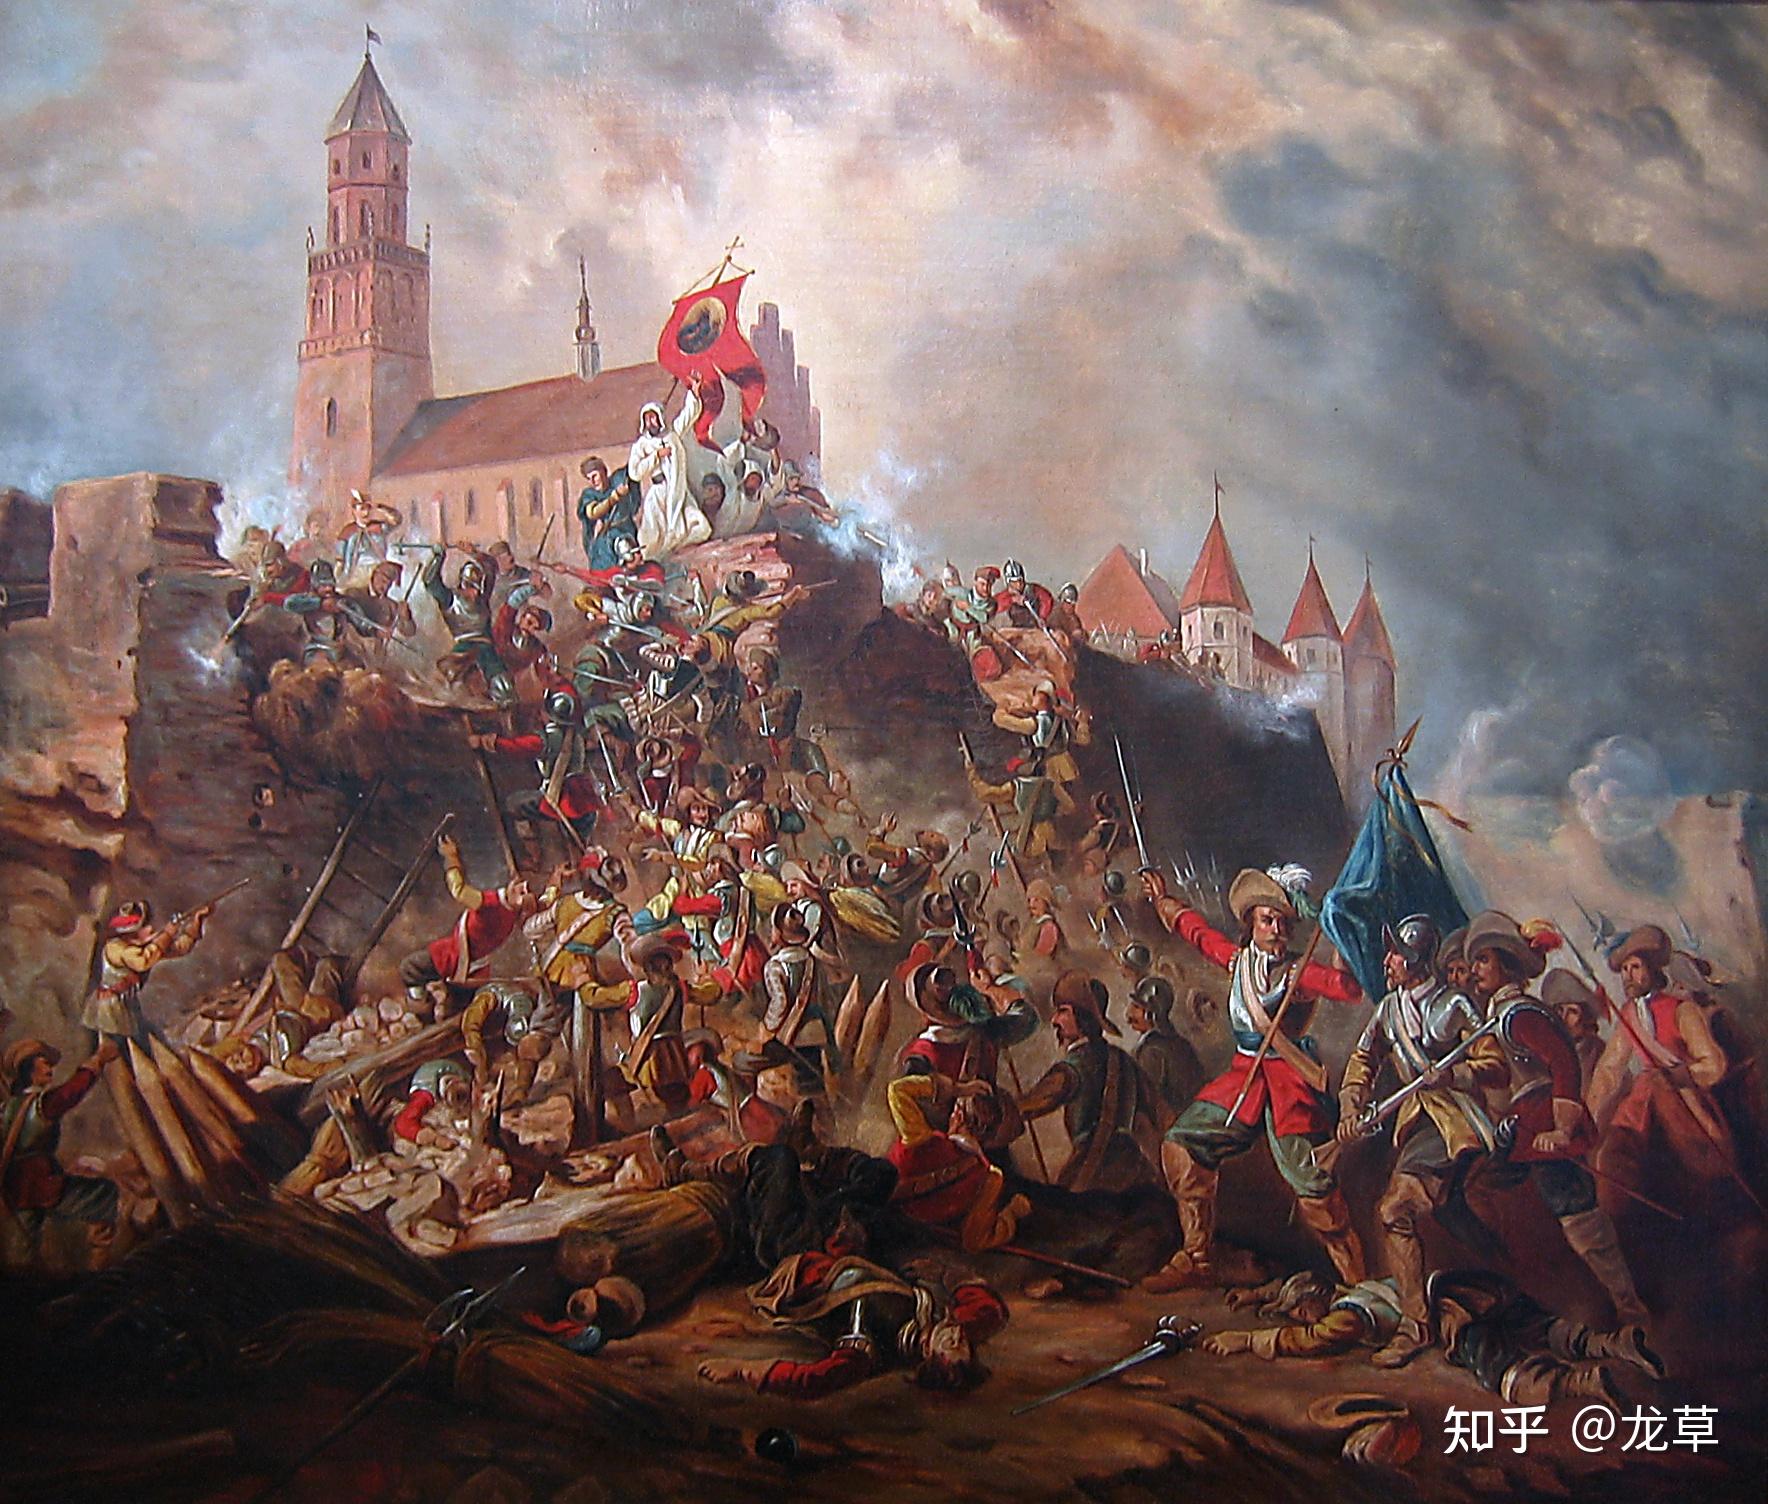 波兰人记载的大洪水时代瑞典军队对波兰的劫掠